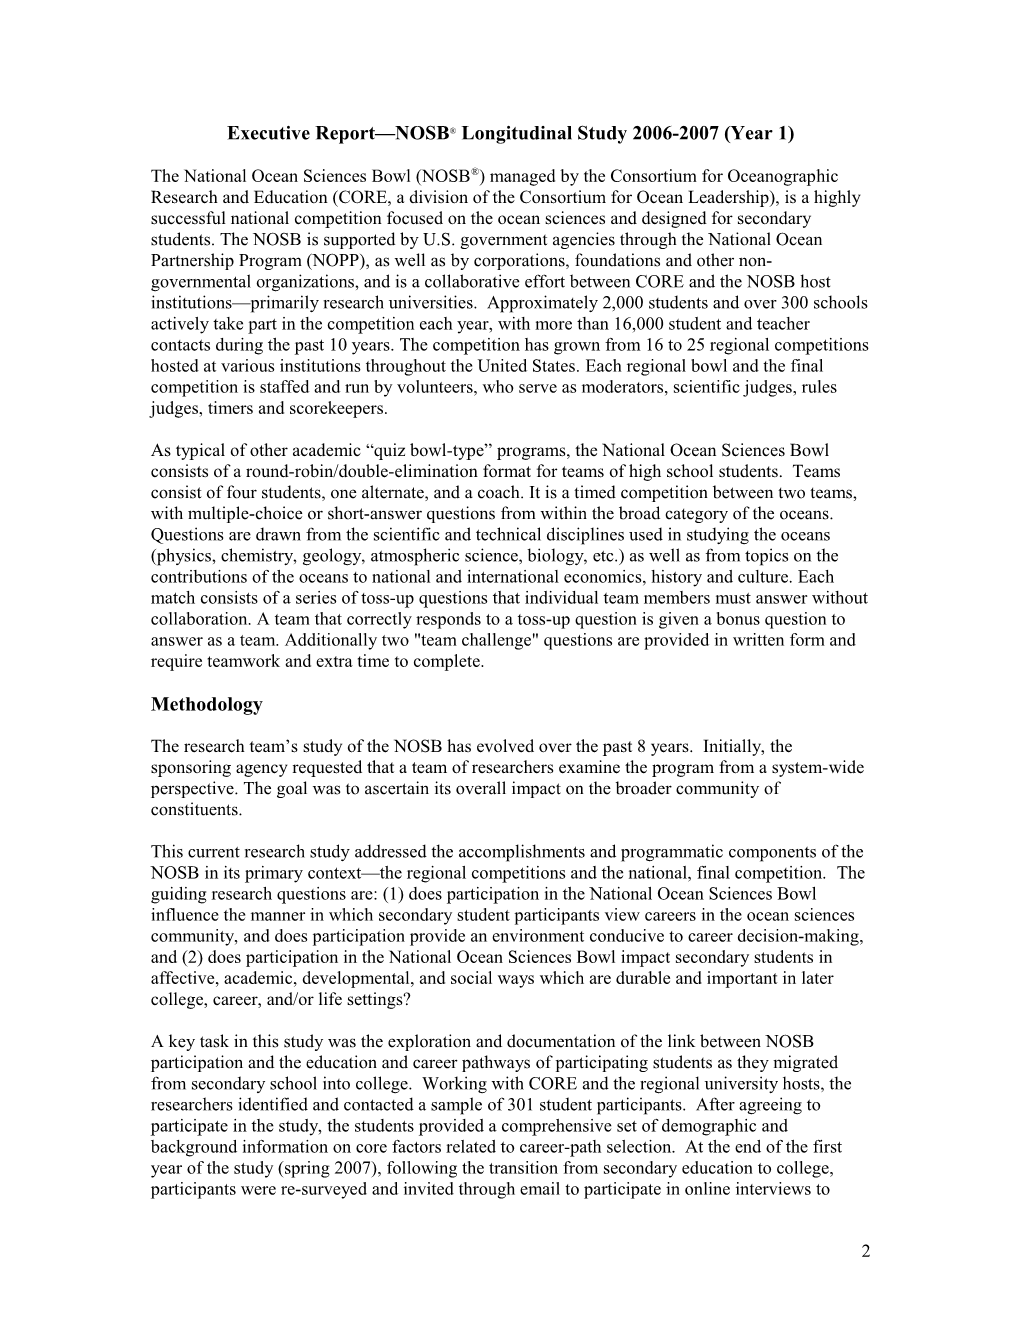 Executive Report NOSB Longitudinal Study 2006-2007 (Year 1)